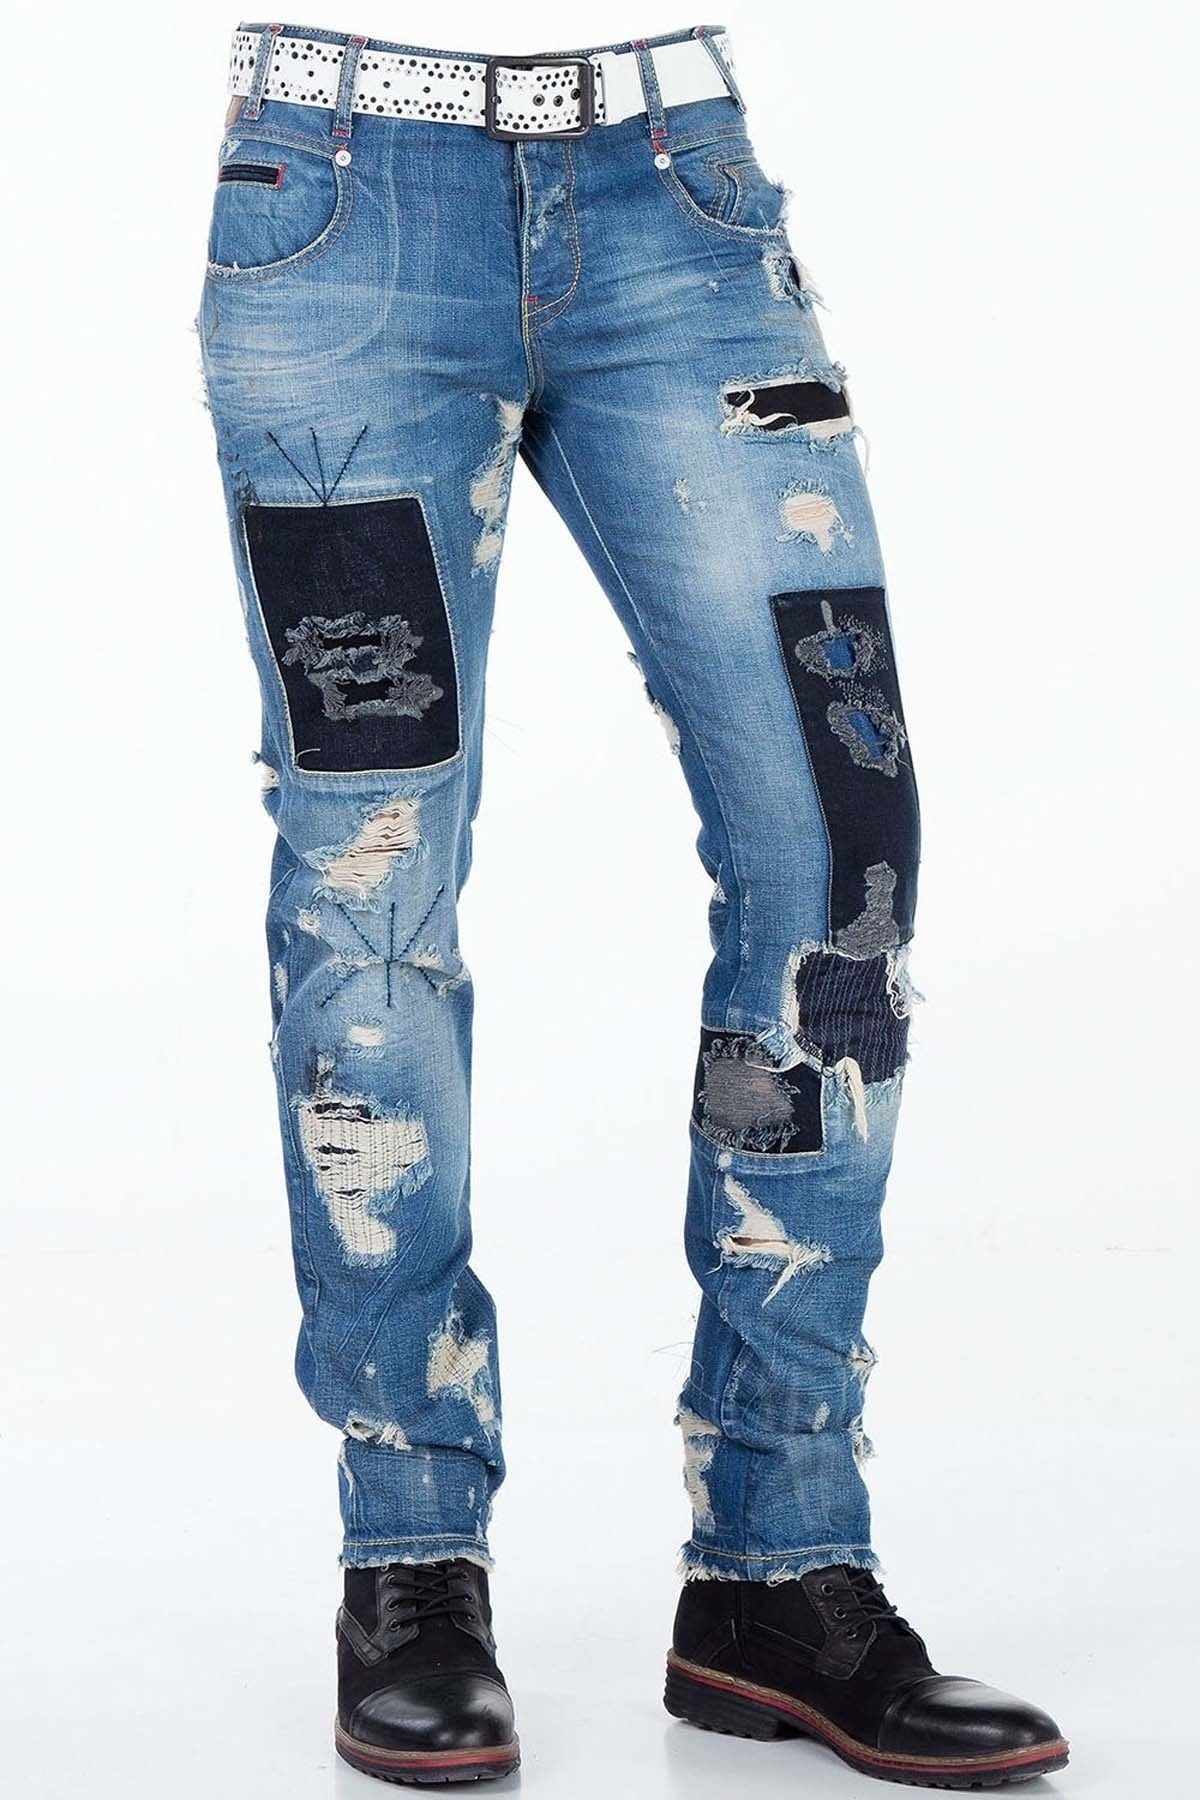 CD347 Jeans confortables pour hommes au look destroyed stylé